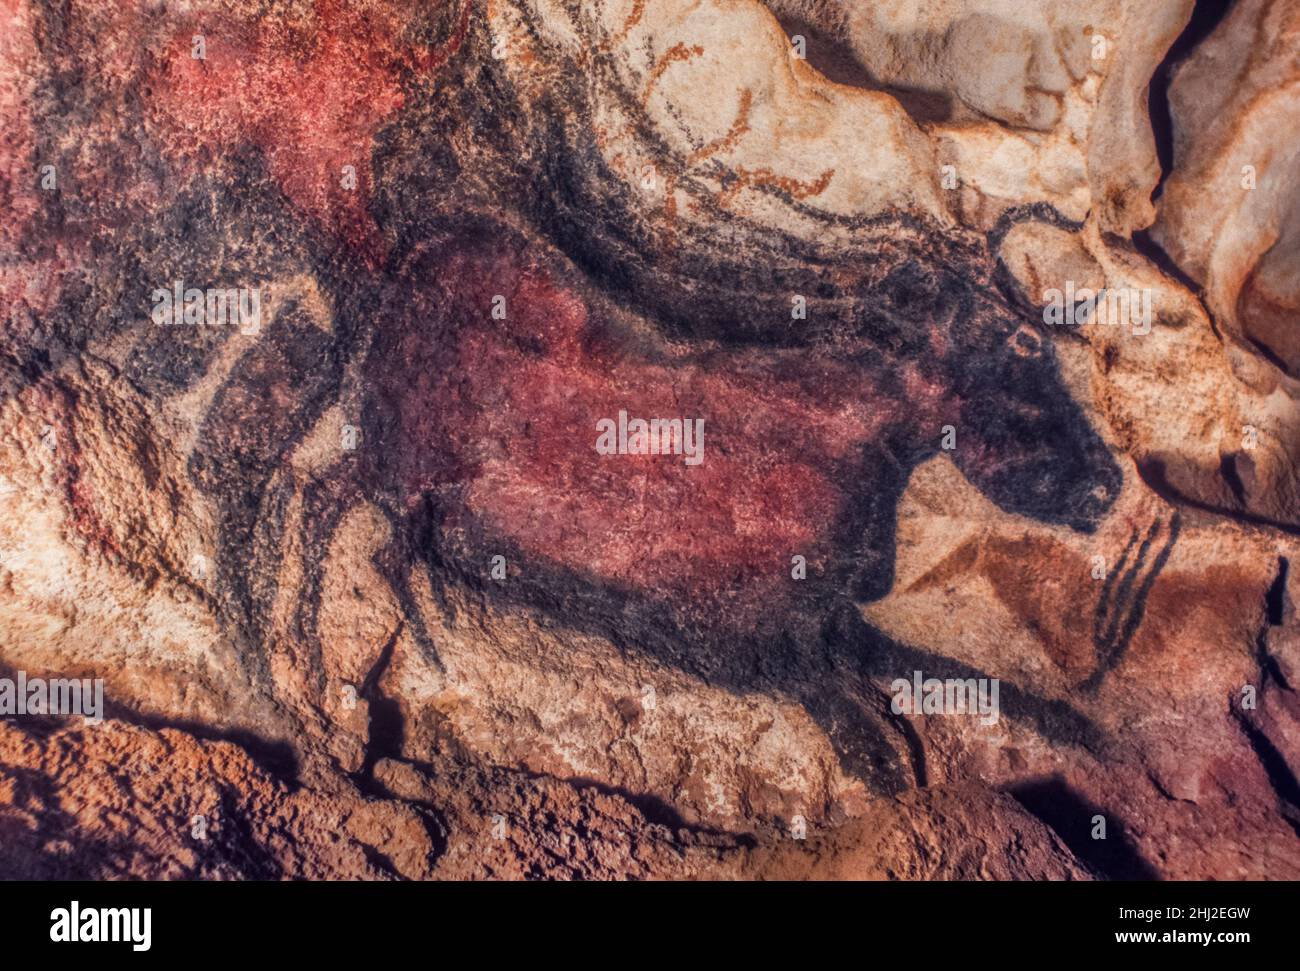 Peinture grotte de l'âge de pierre d'auroch, aujourd'hui disparu taureau sauvage, grottes de Lascaux, Périgord, Montignac, Dordogne,France Banque D'Images